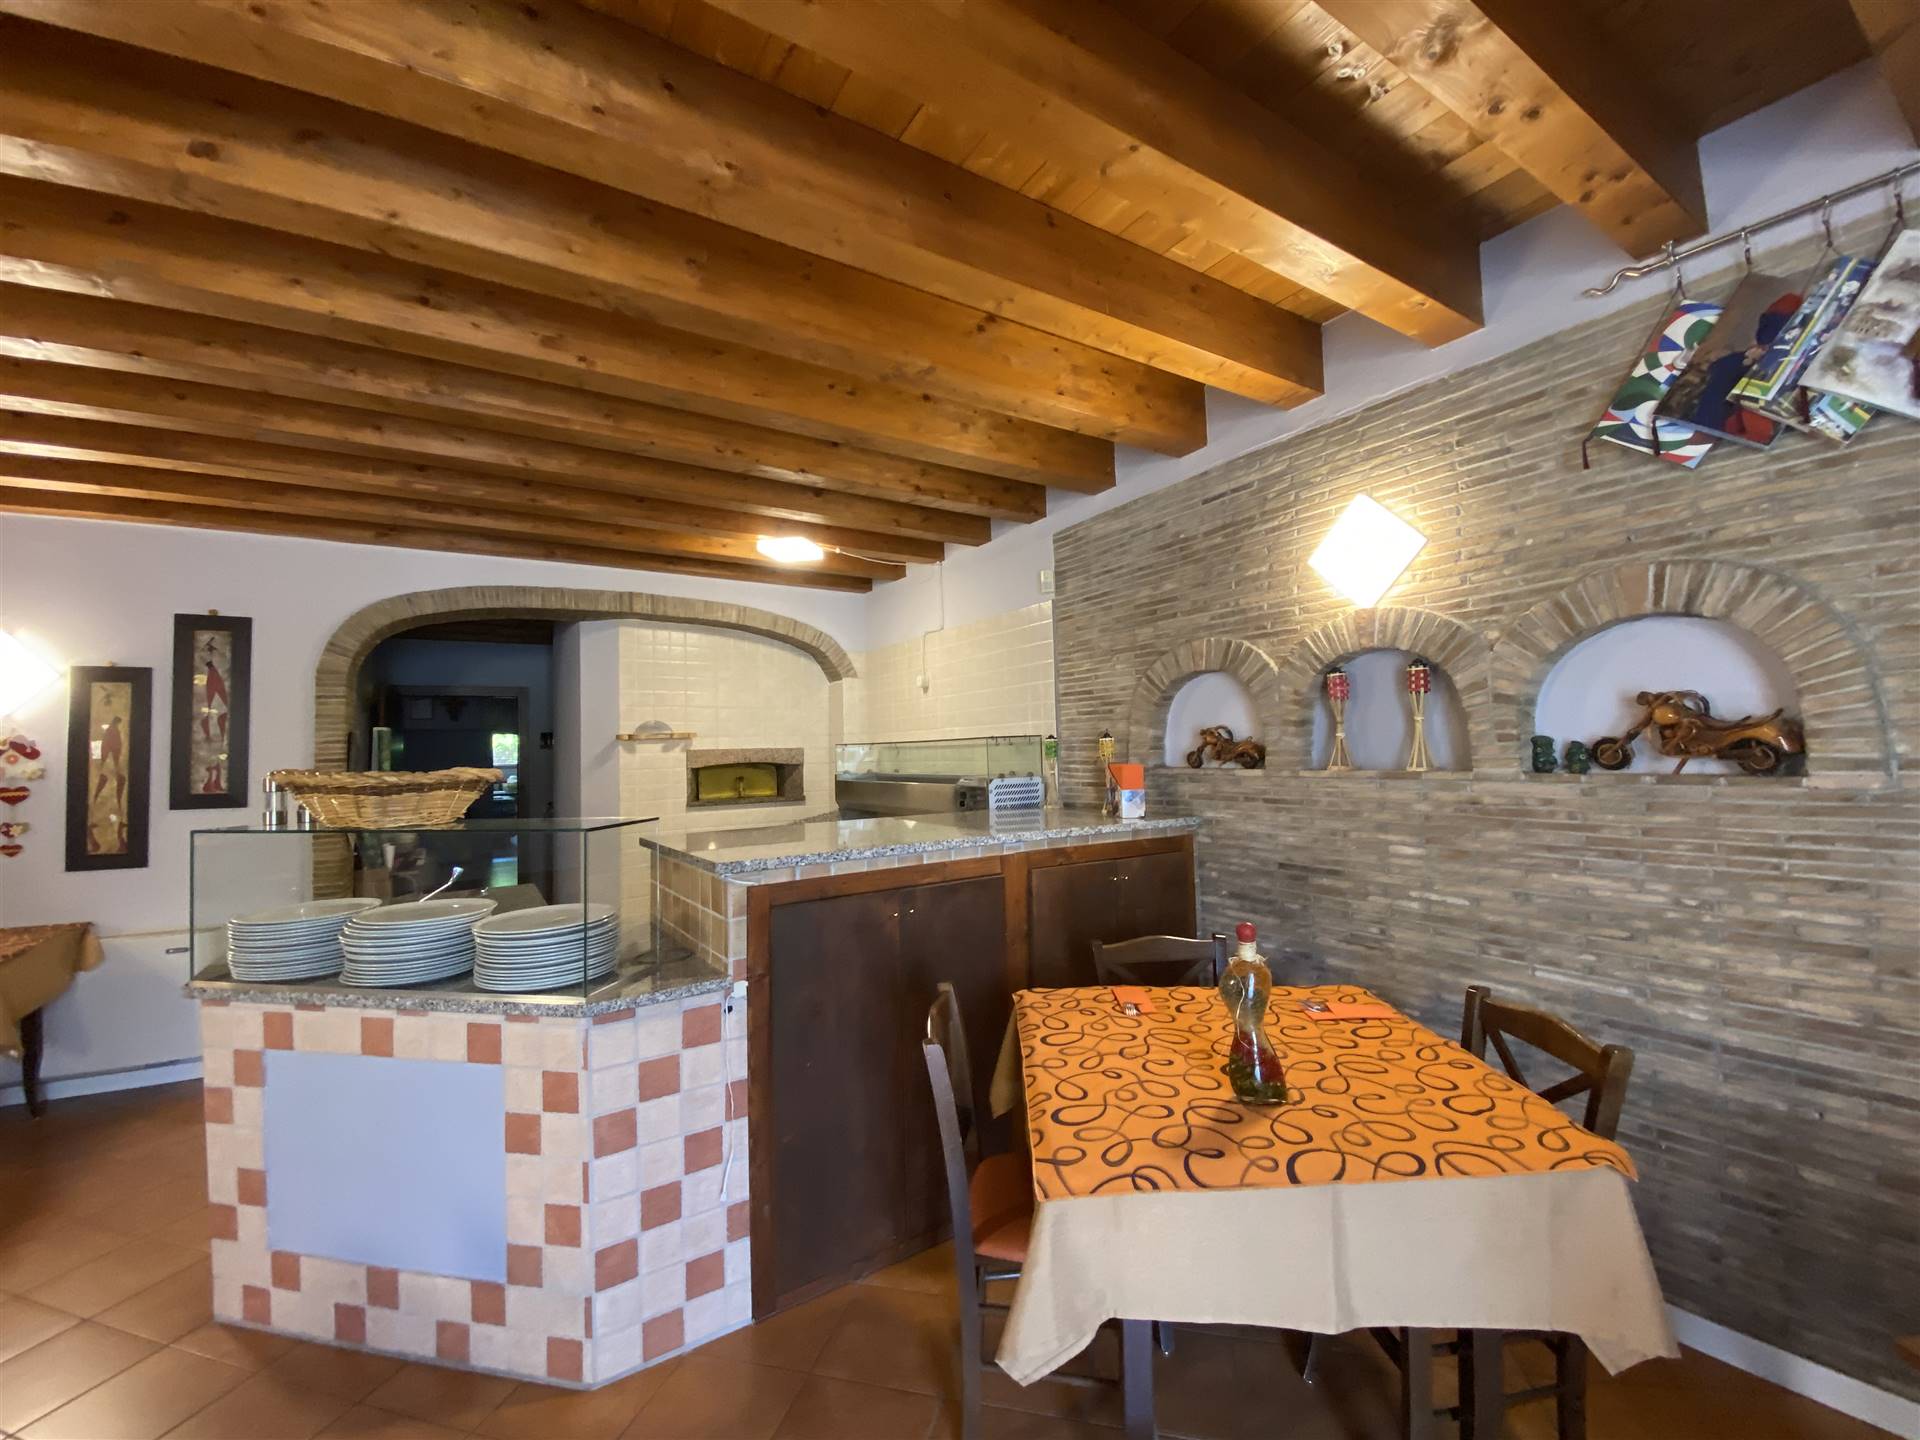 In Portogruaro frazione, affittasi attività di ristorazione con licenza di bar, ristorante e pizzeria con forno a legna che si sviluppa in una 